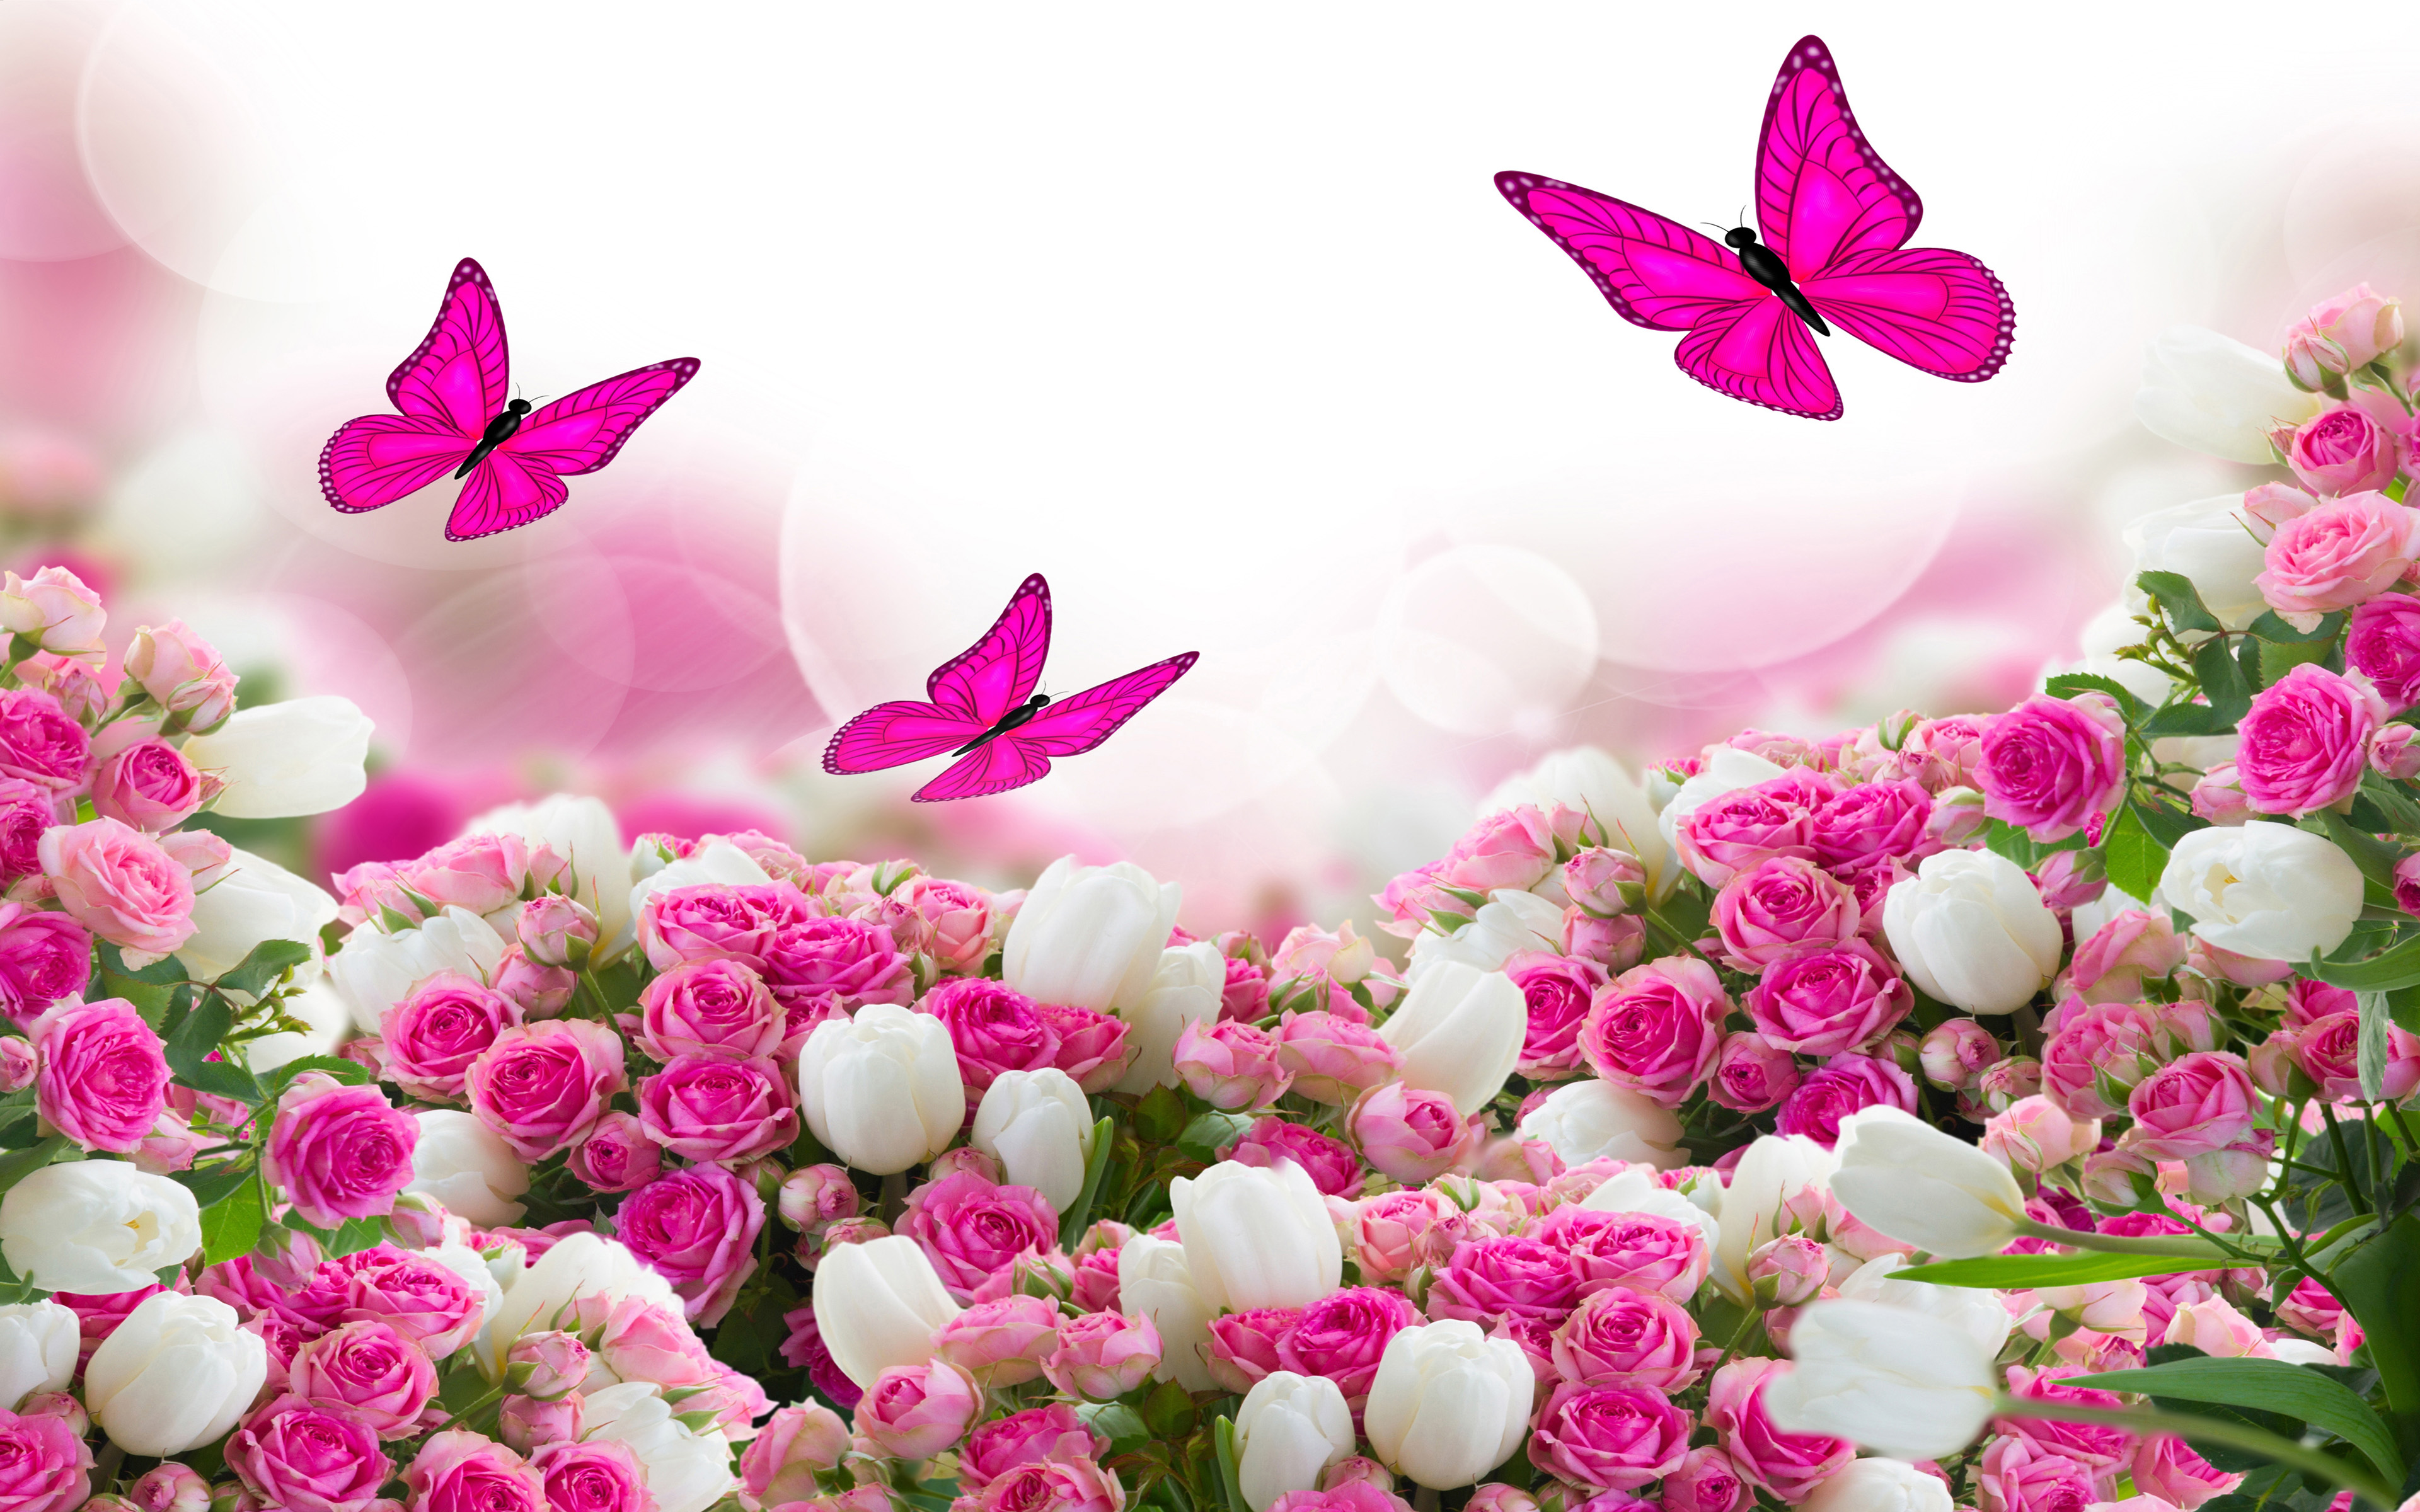 Скачать обои бесплатно Цветок, Роза, Бабочка, Белый Цветок, Художественные, Розовый Цветок картинка на рабочий стол ПК